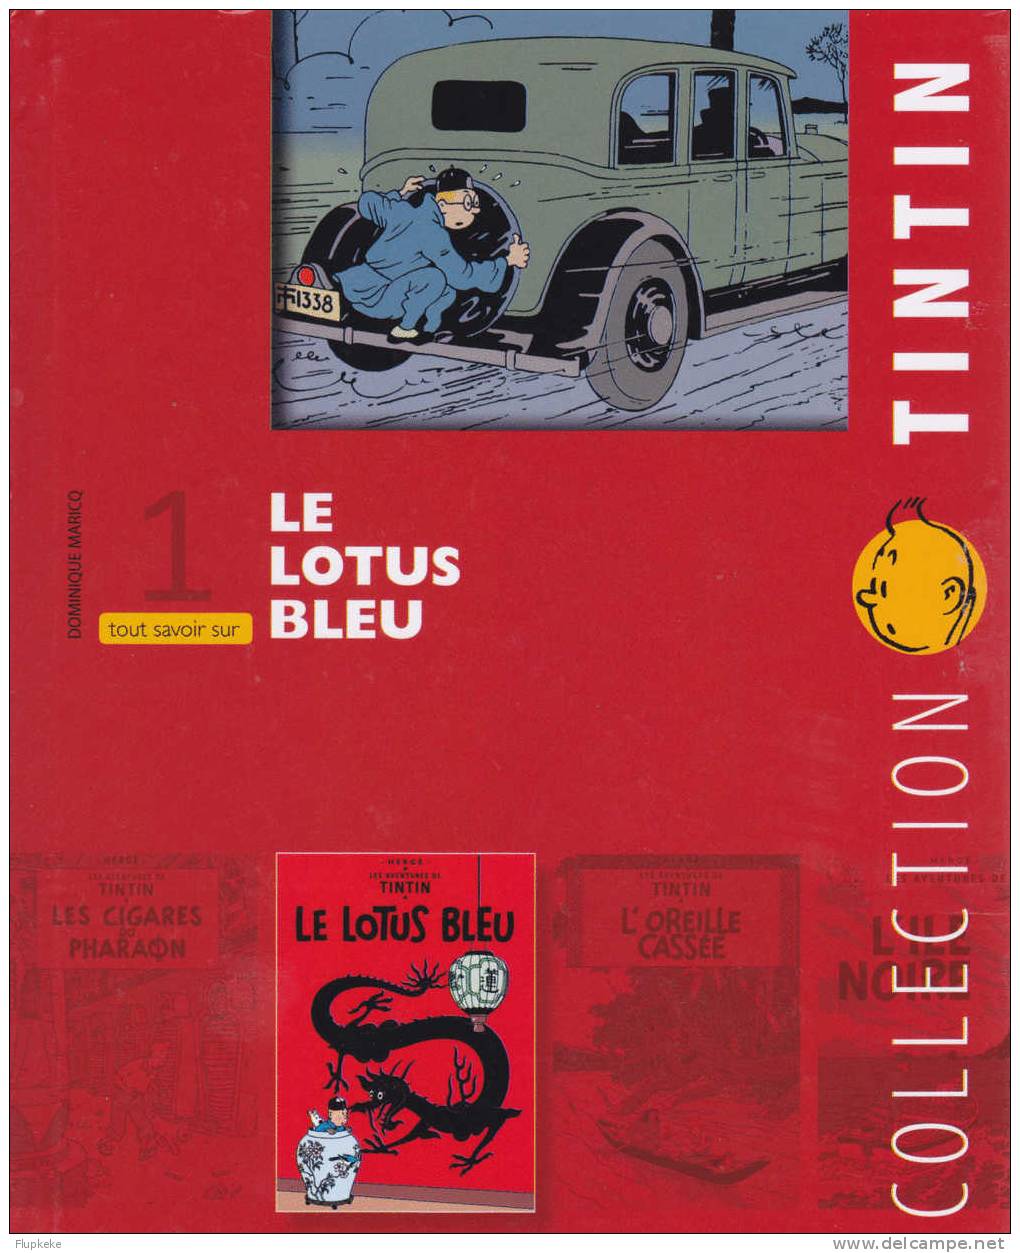 Dvd Zone 2 Le Lotus Bleu Collection Tintin Version Française Neuf Et Scellé Avec Livret Tout Savoir 01 Citel Vidéo 2010 - Action & Abenteuer